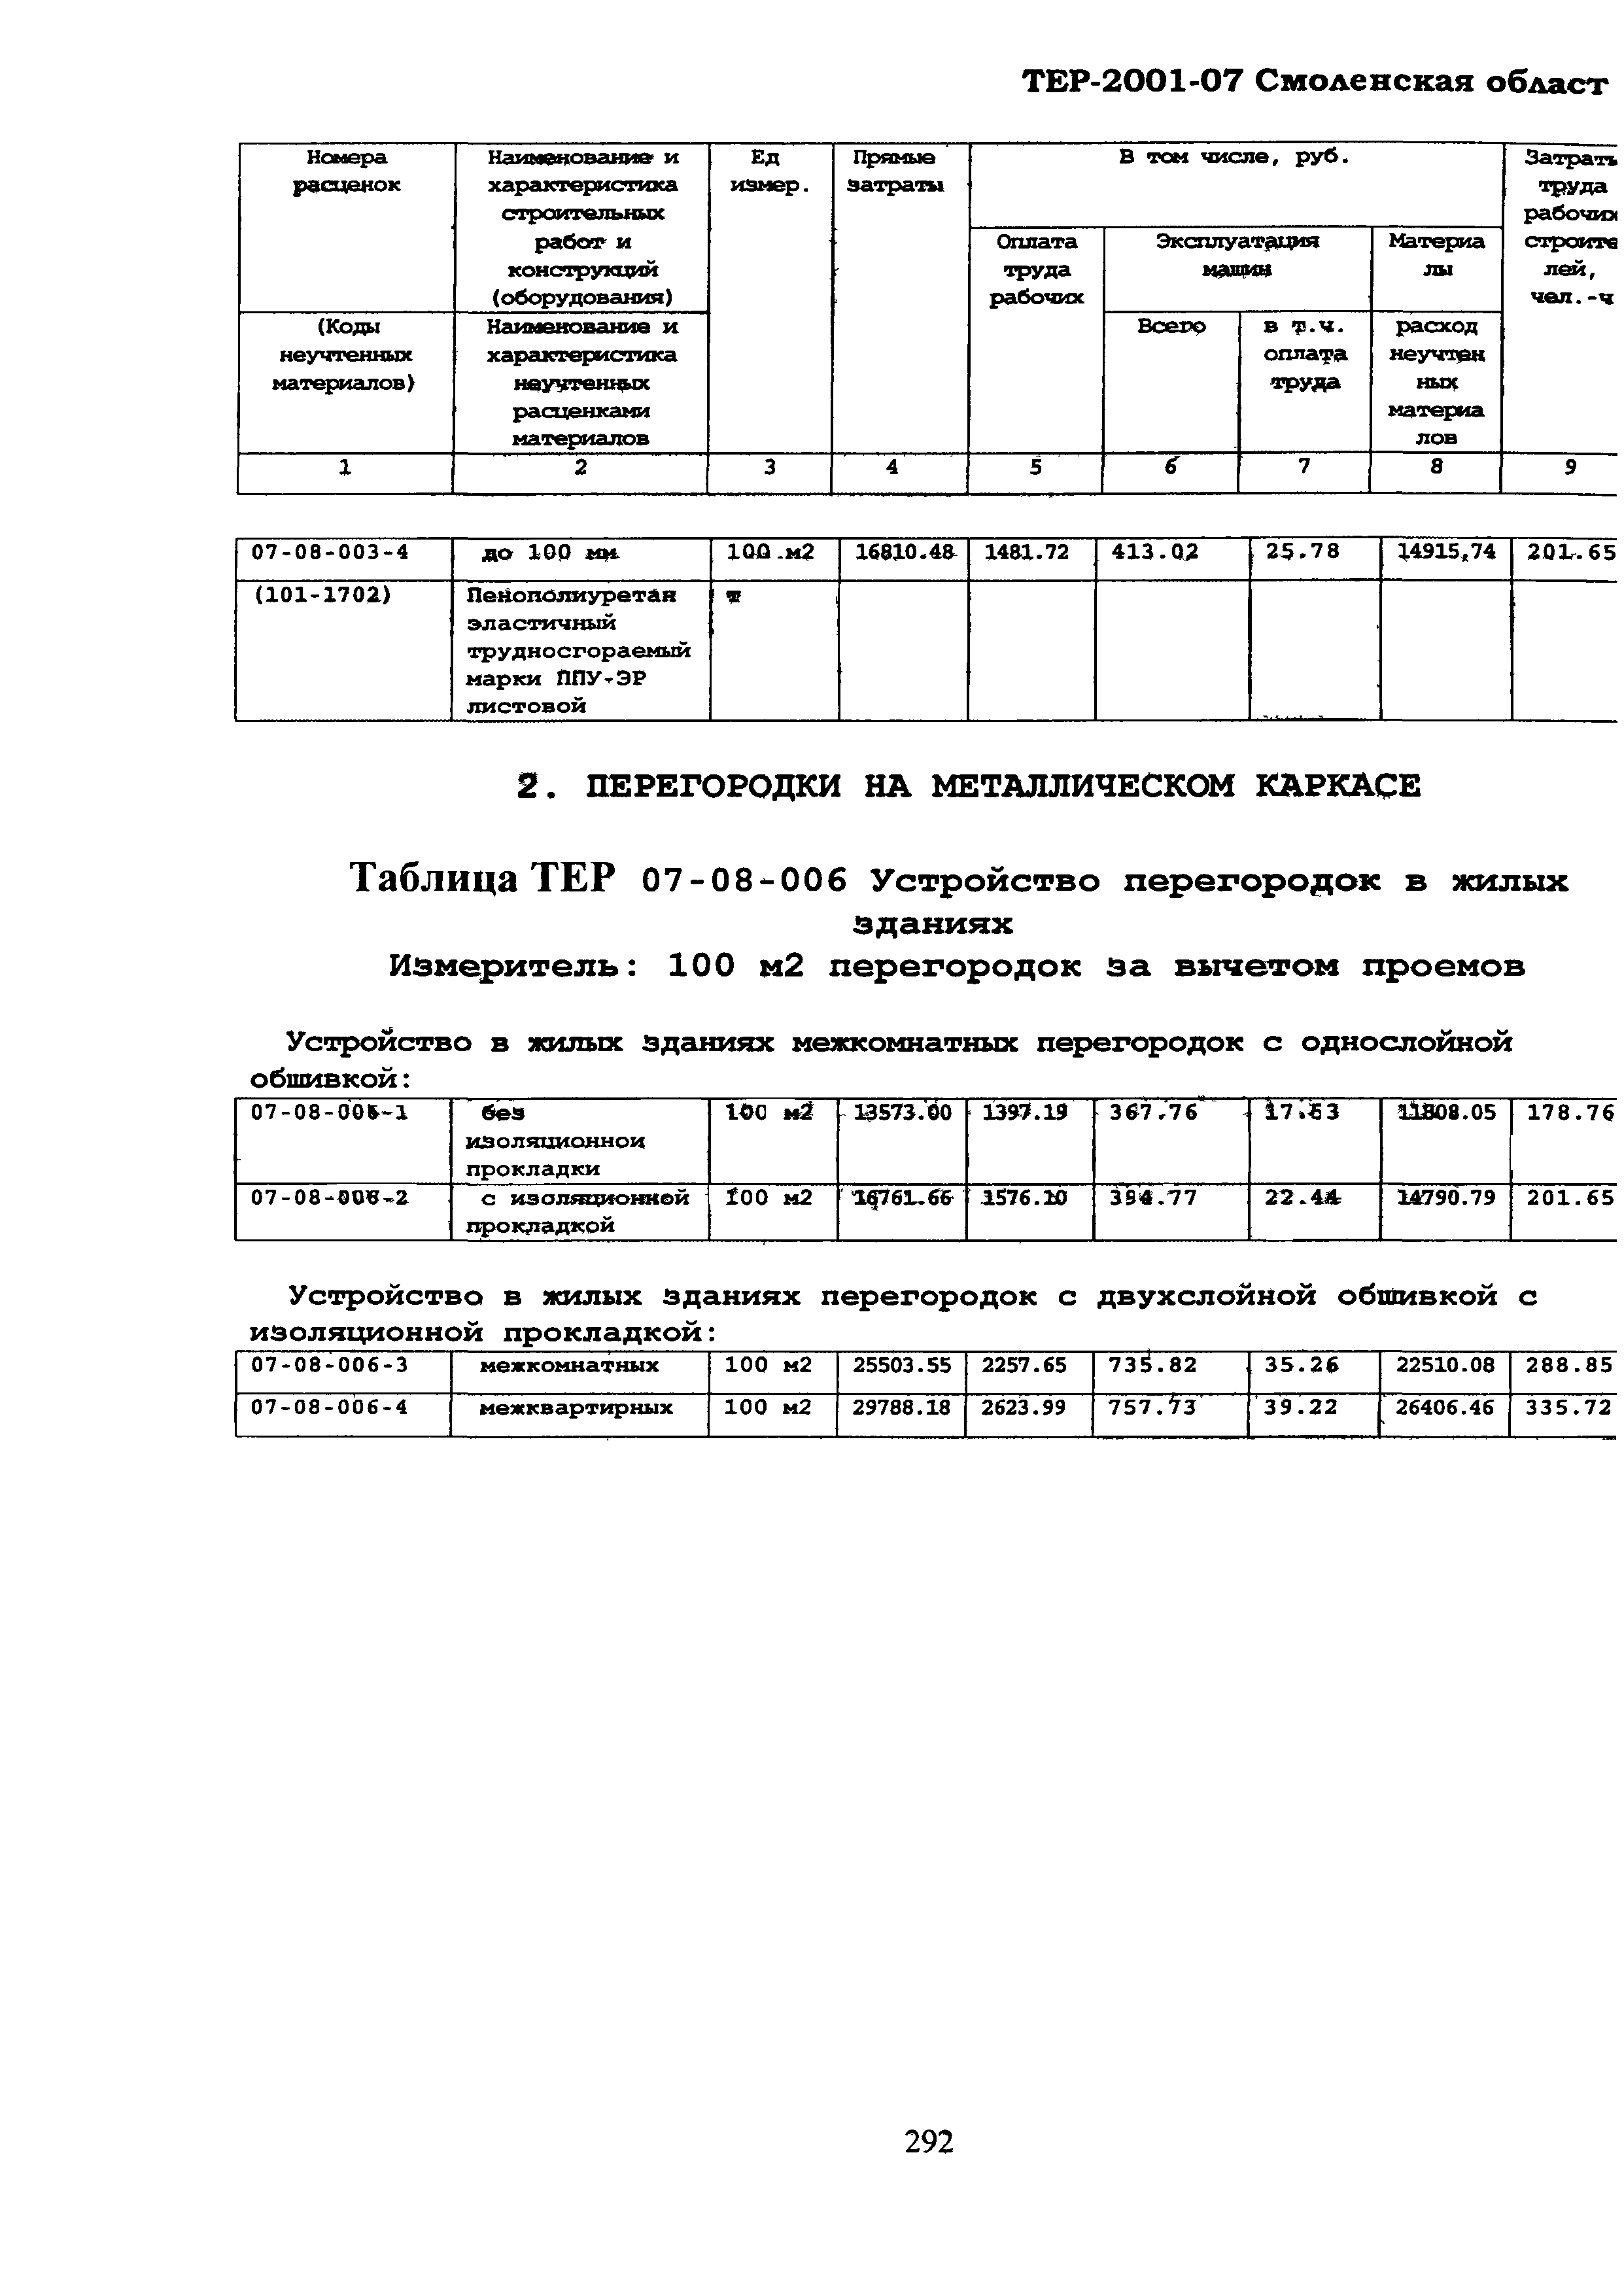 ТЕР Смоленская область 2001-07